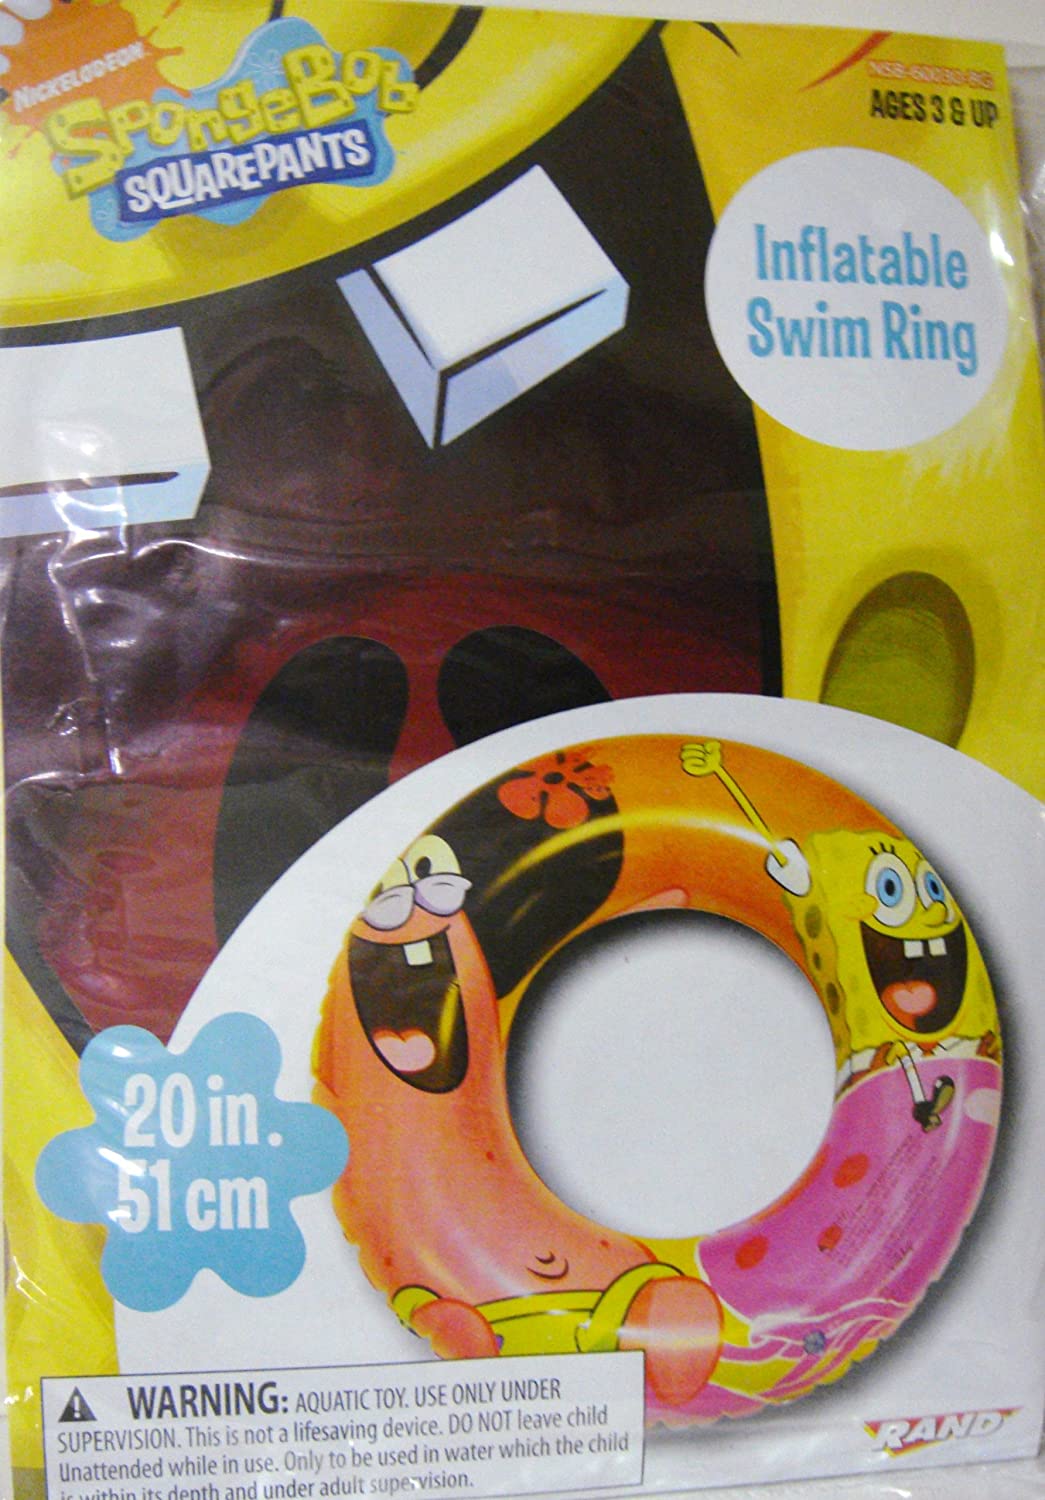 売れ筋 スポンジボブ カートゥーンネットワーク Spongebob キャラクター アメリカ限定多数 Nick Jr Spongebob Squarepants Inflatable Swim Ring Spongebob Swim Ringスポンジボブ カートゥーンネットワーク Spongebob キャラクター アメリカ限定多数 第1位獲得